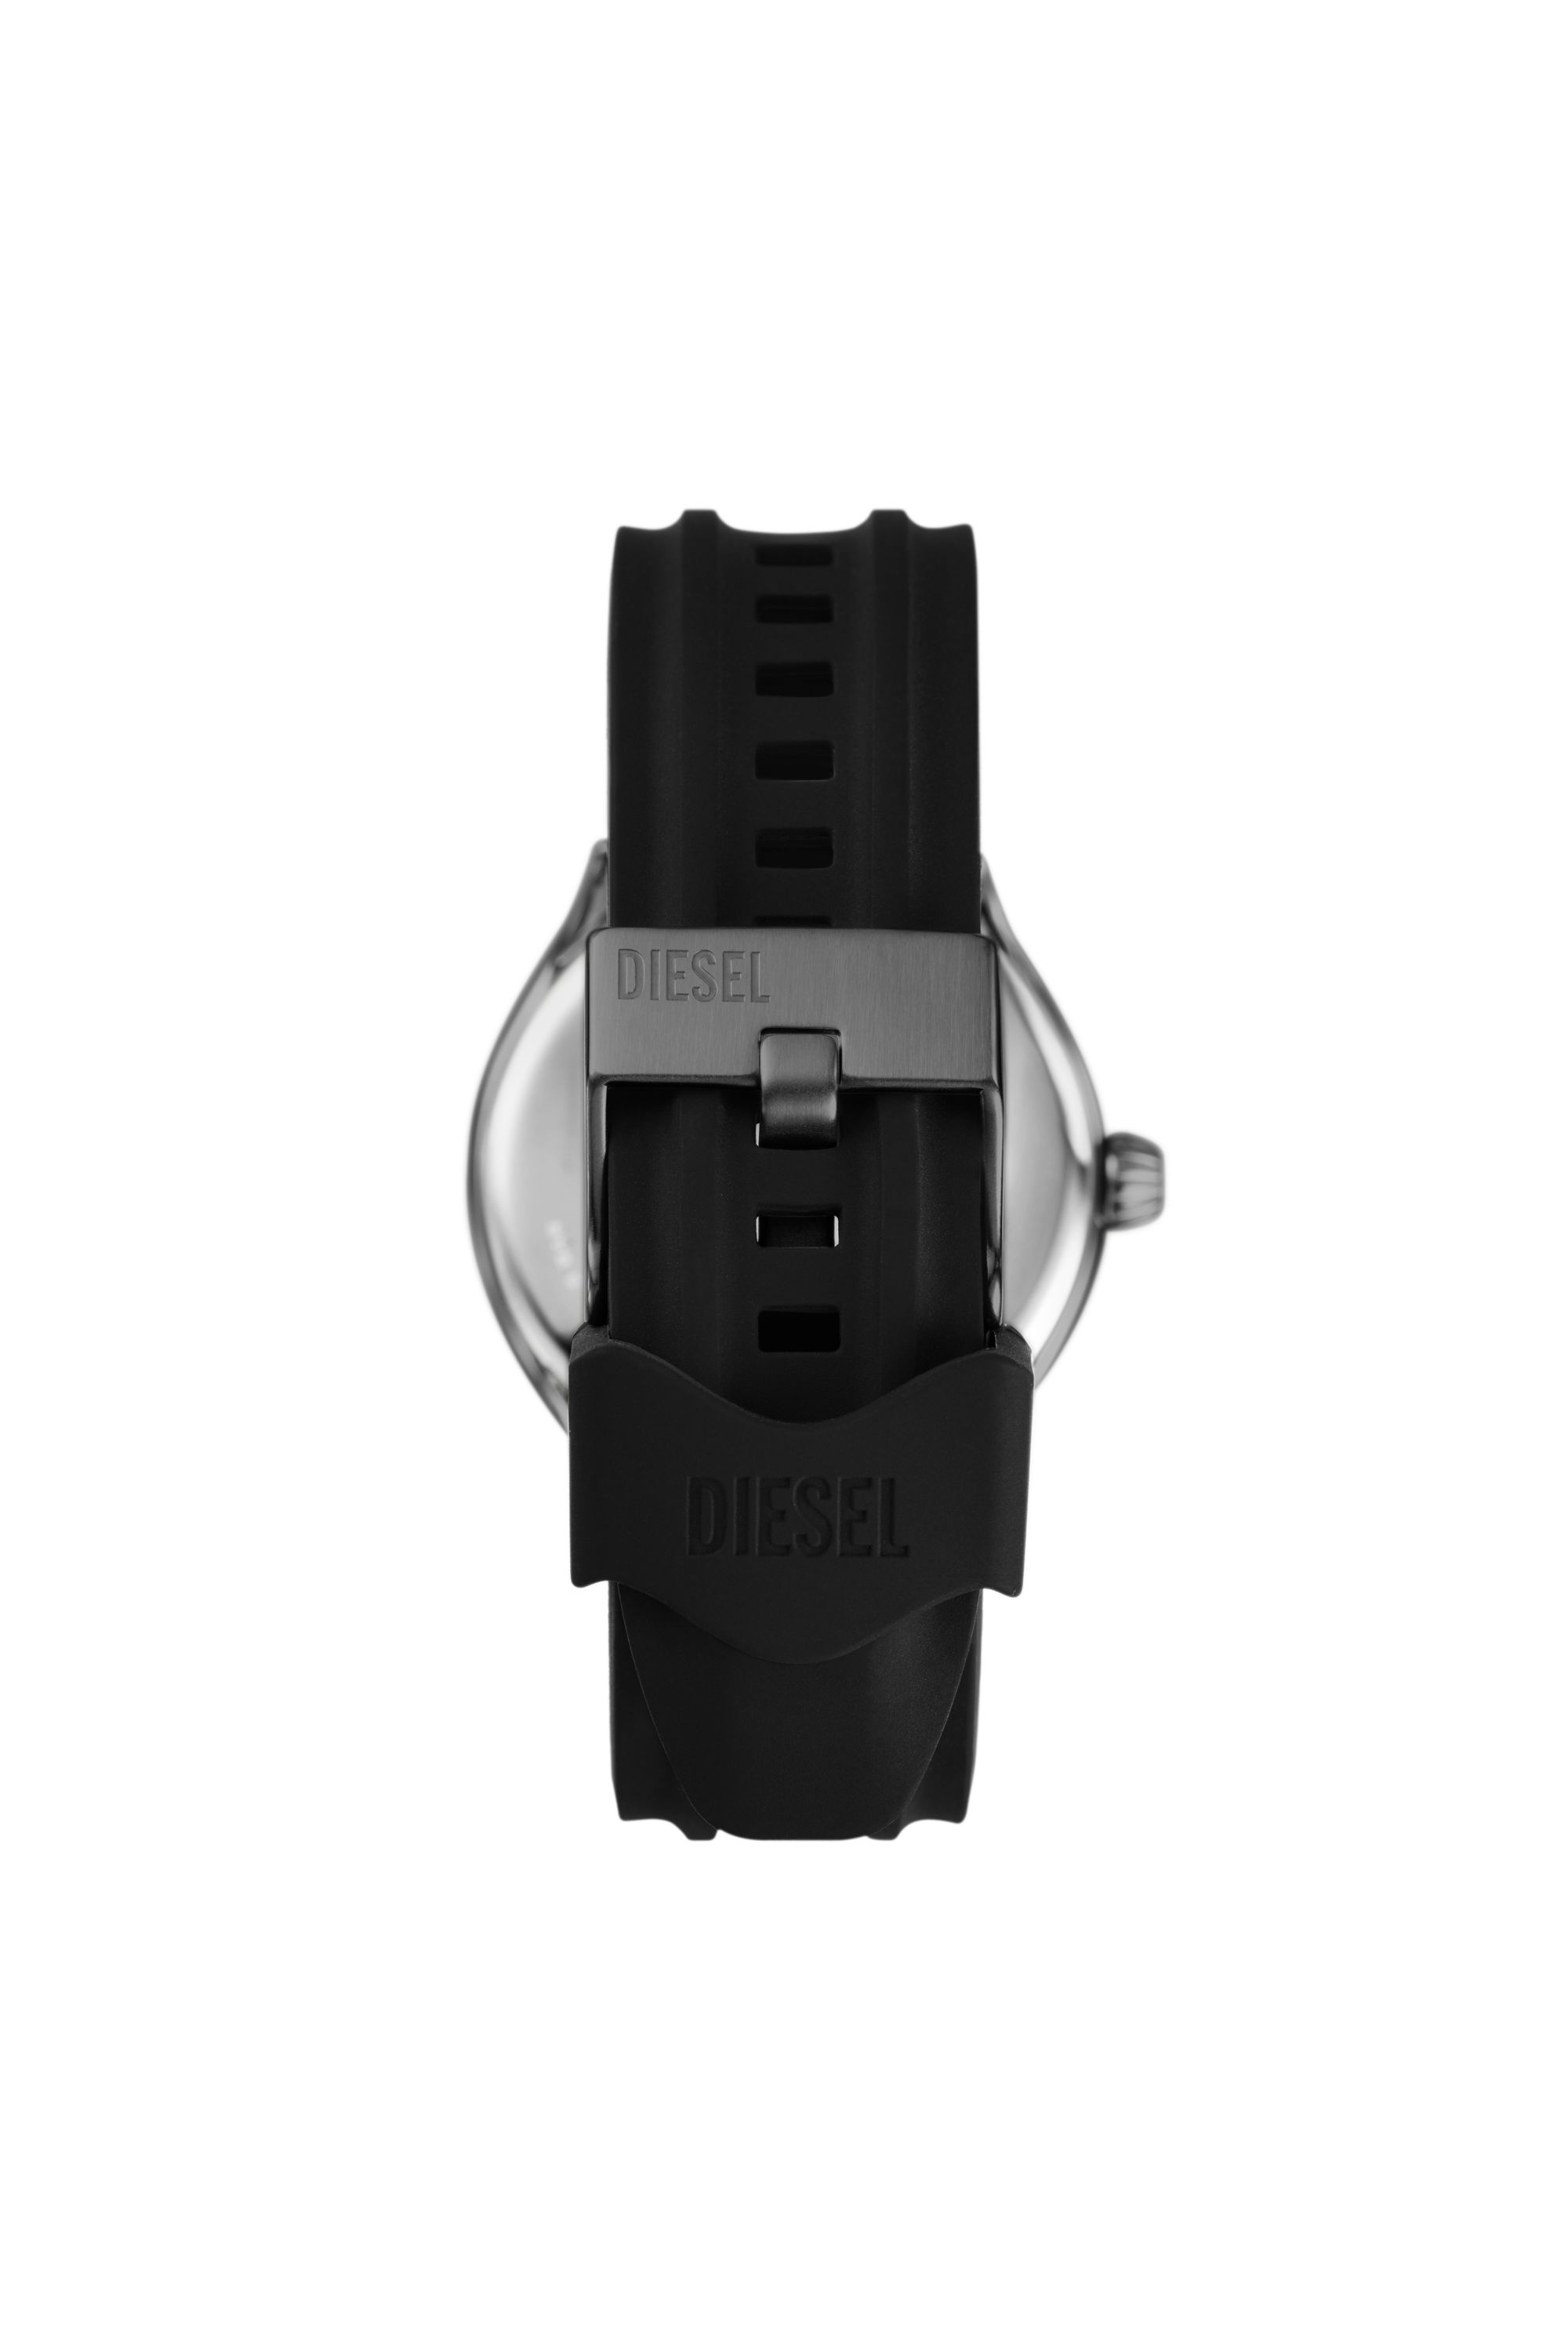 Diesel - DZ2201, Man Streamline three-hand black silicone watch in Black - Image 2